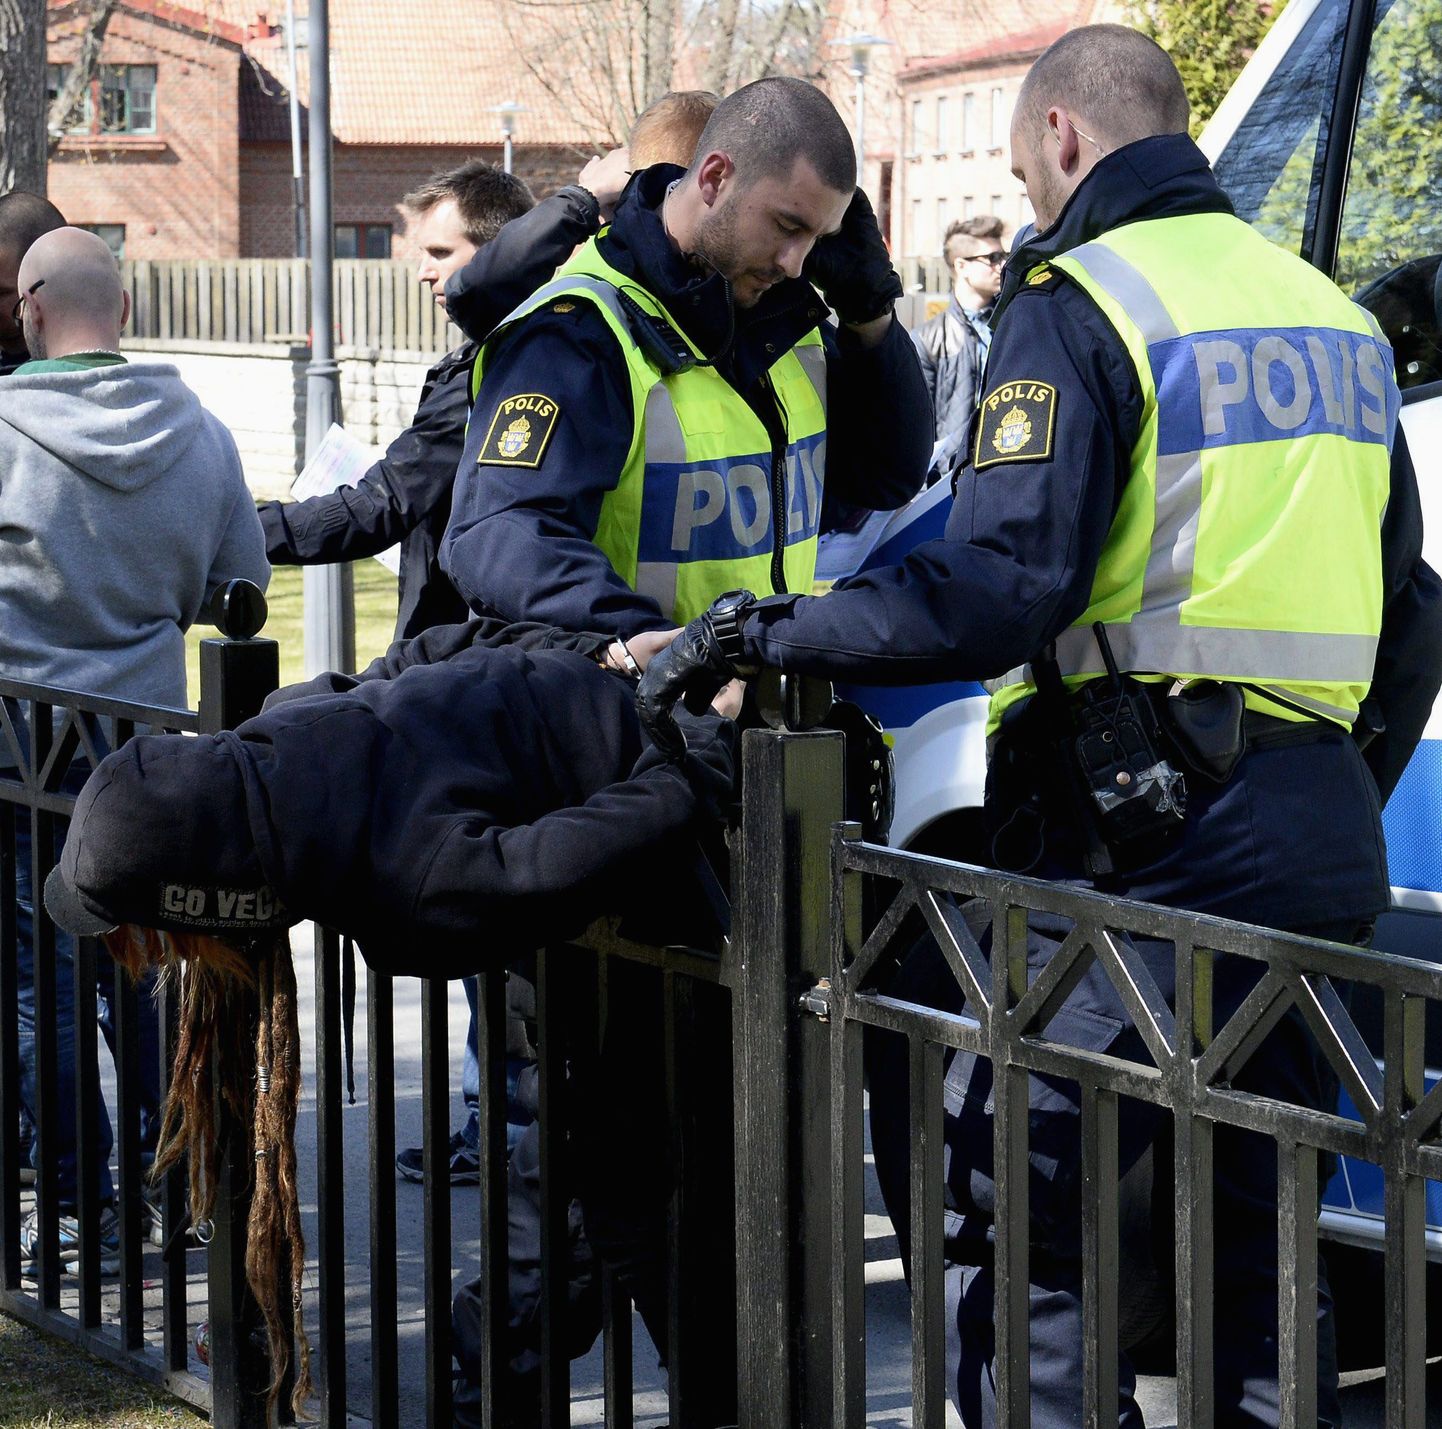 Rootsi politseinik sai tõendusmaterjali kohta valetamise eest trahvi